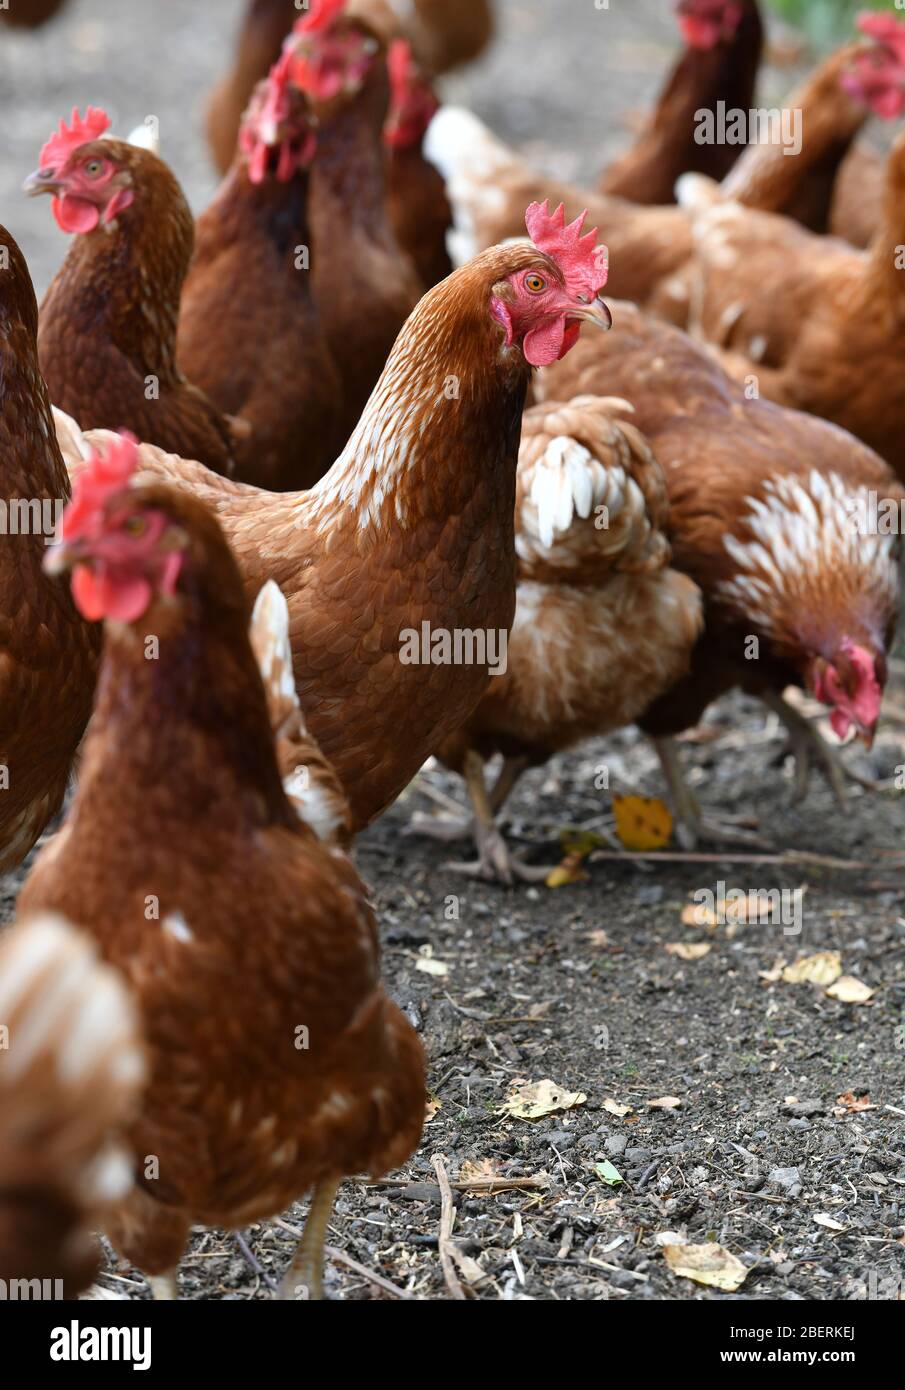 Un éleveur de volaille portant des bottes en caoutchouc se promenant parmi une foule de poules vieillissantes sur une ferme de volaille dans le Oxfordshire. Banque D'Images